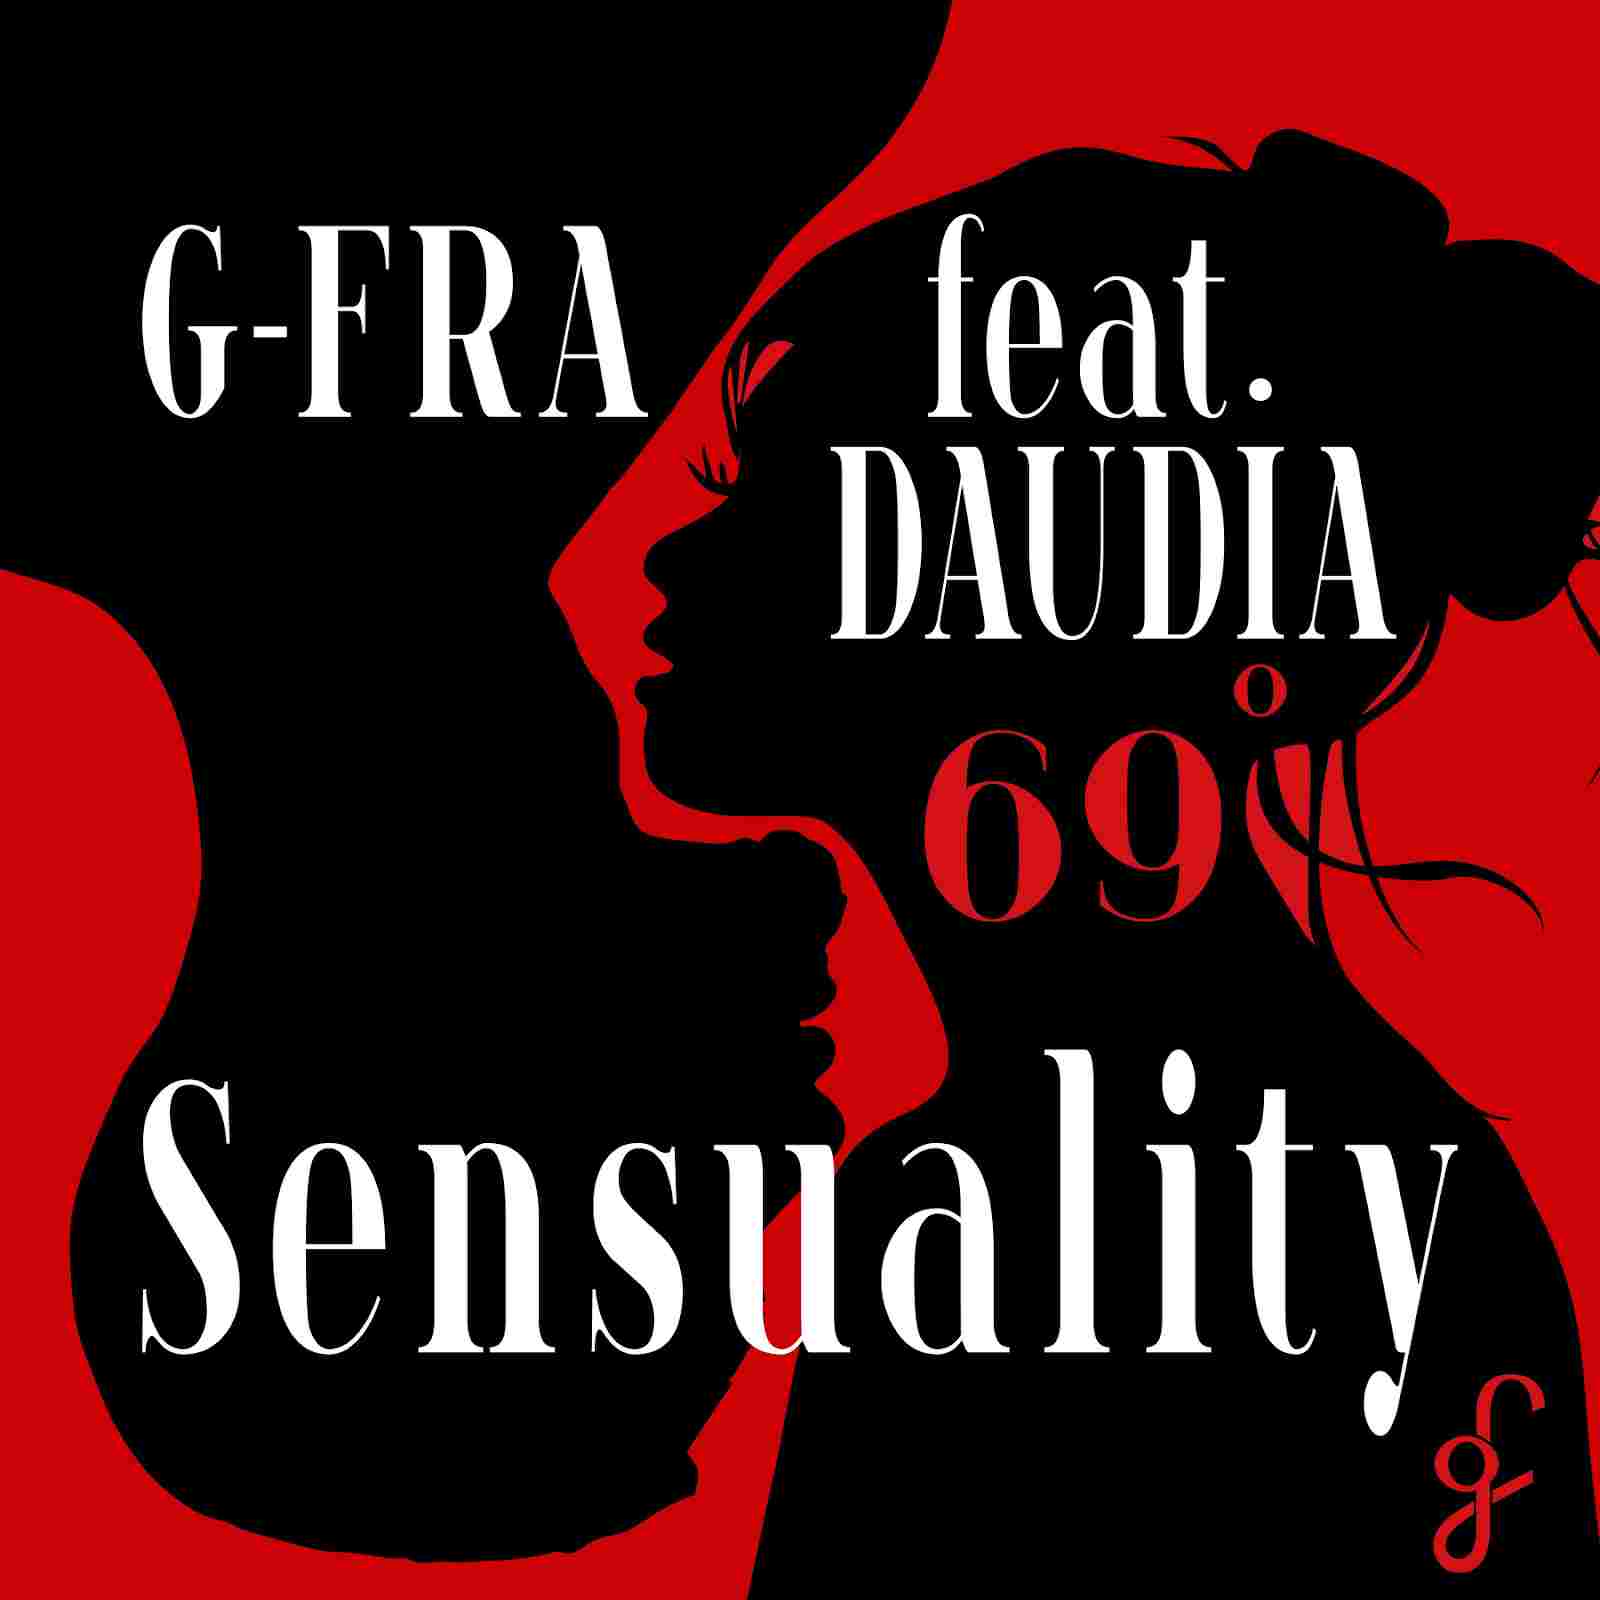 G-FRA feat. Daudia “Sensuality” è la nuova produzione del compositore lussemburghese di adozione